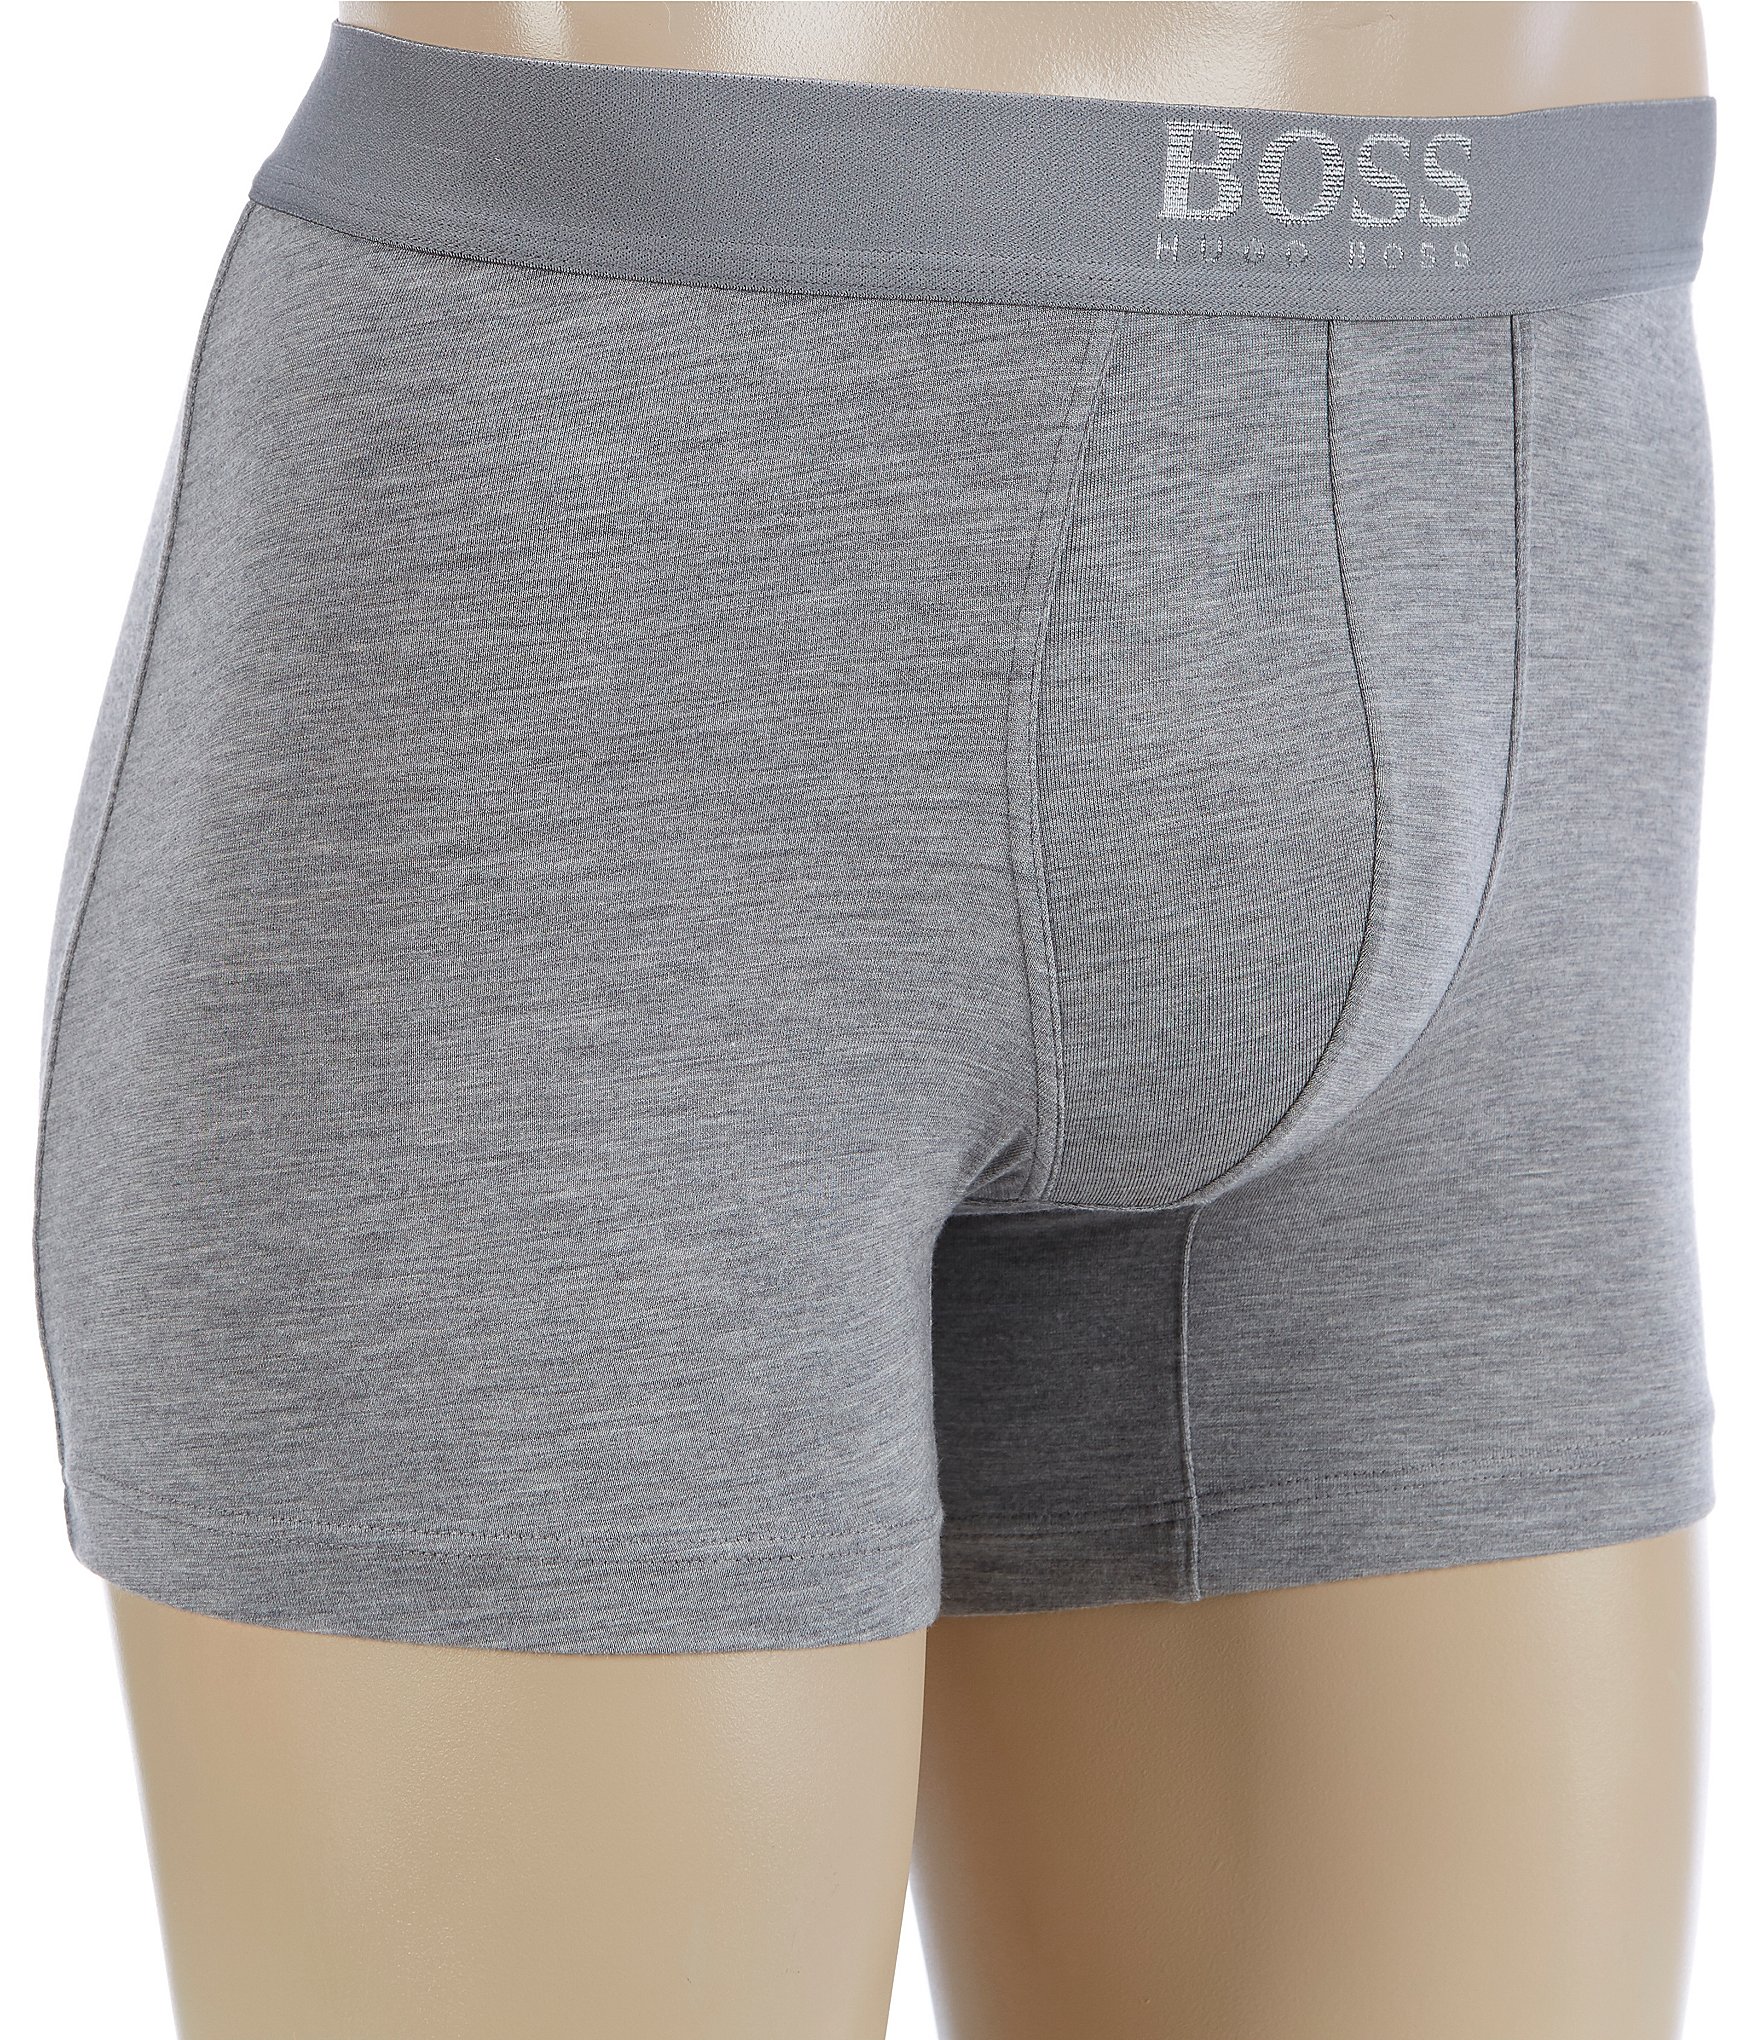 boss mens underwear sale